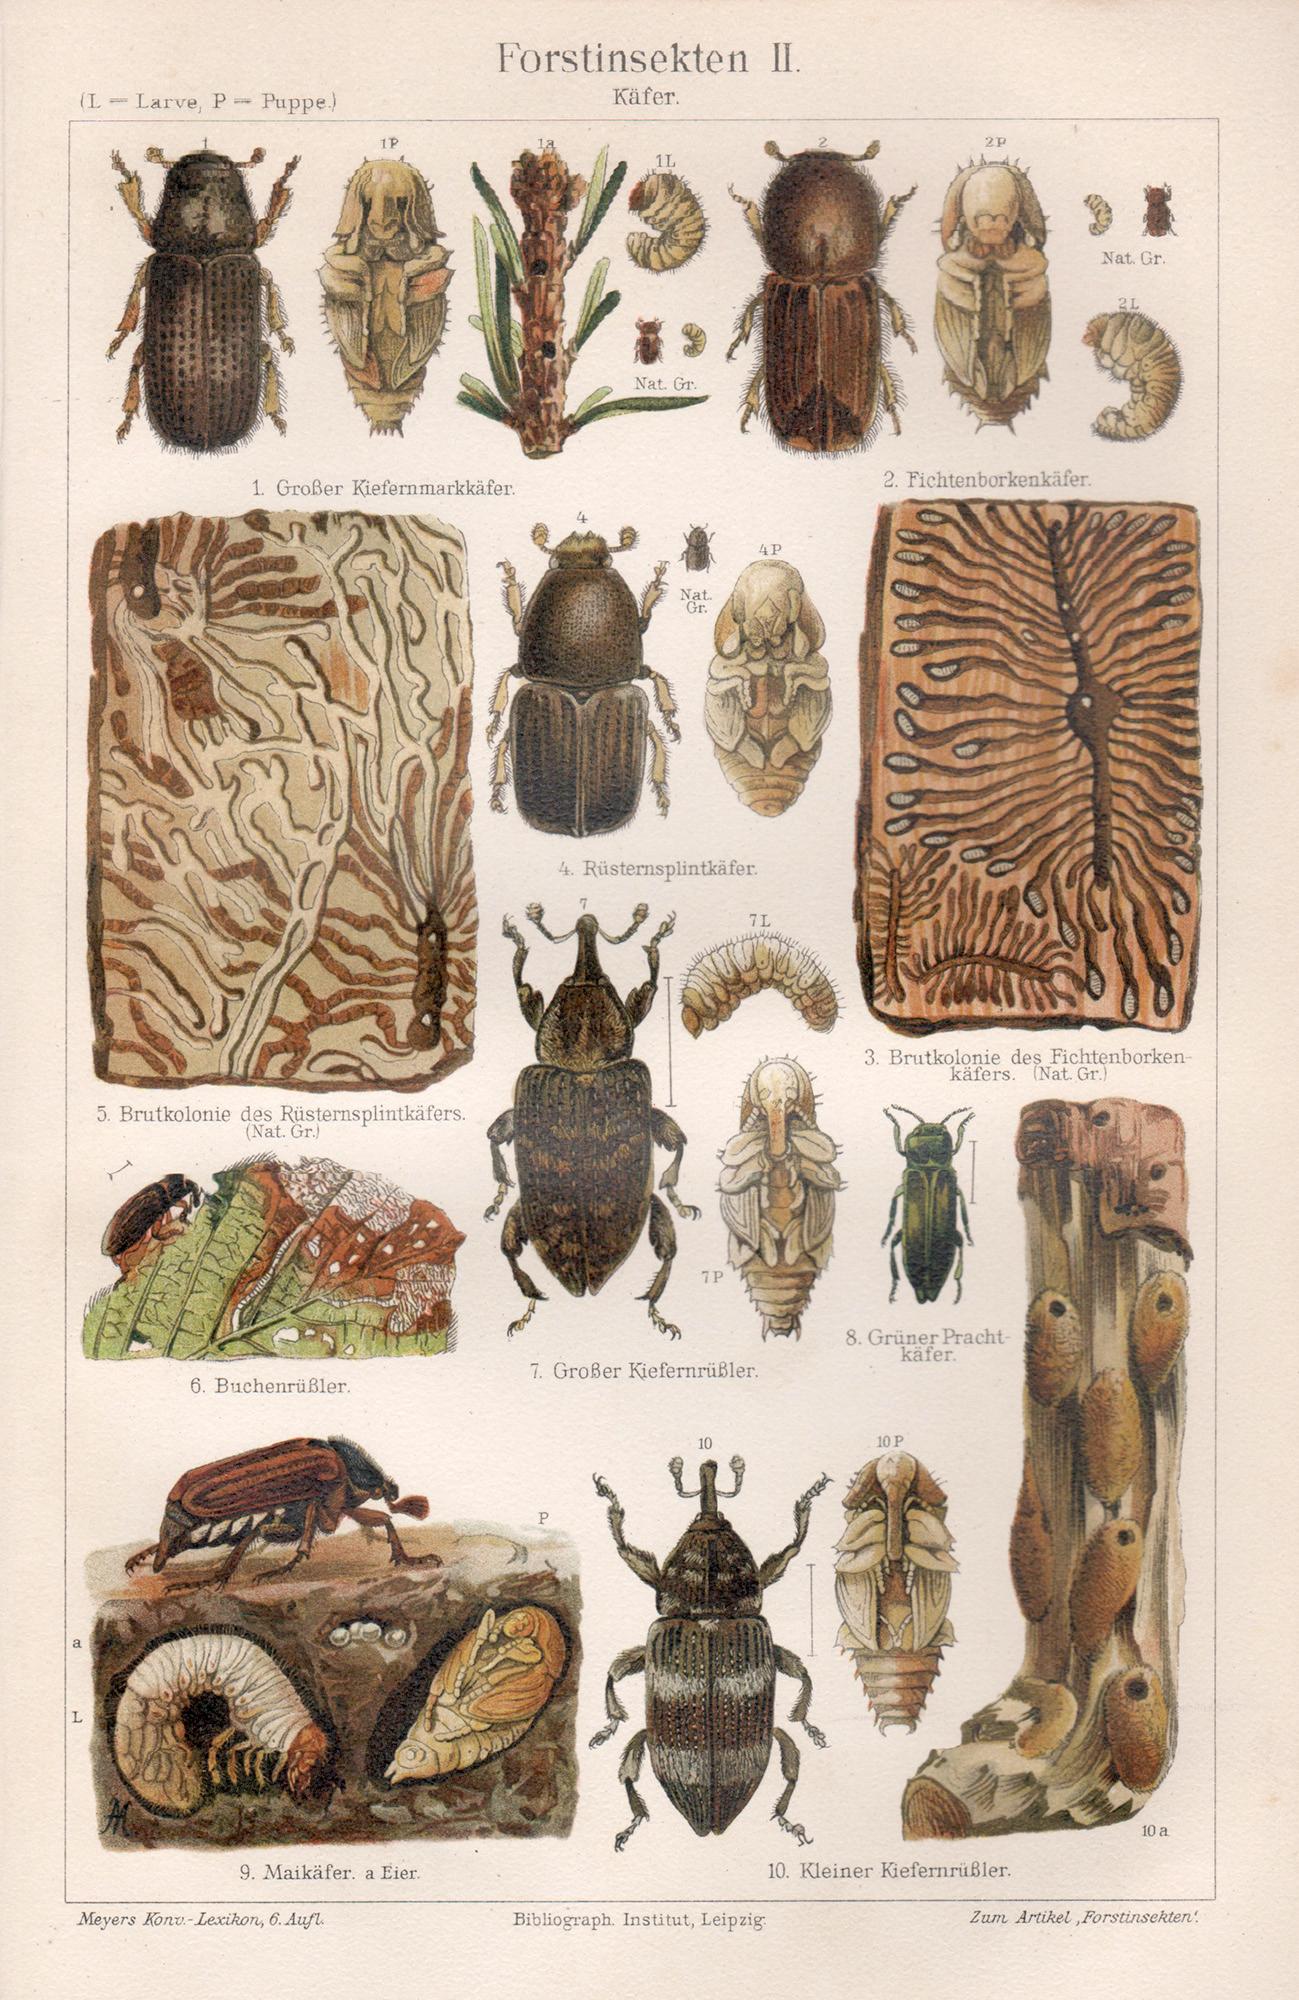 Insectes de la forêt, scarabées, impression chromolithographie ancienne allemande